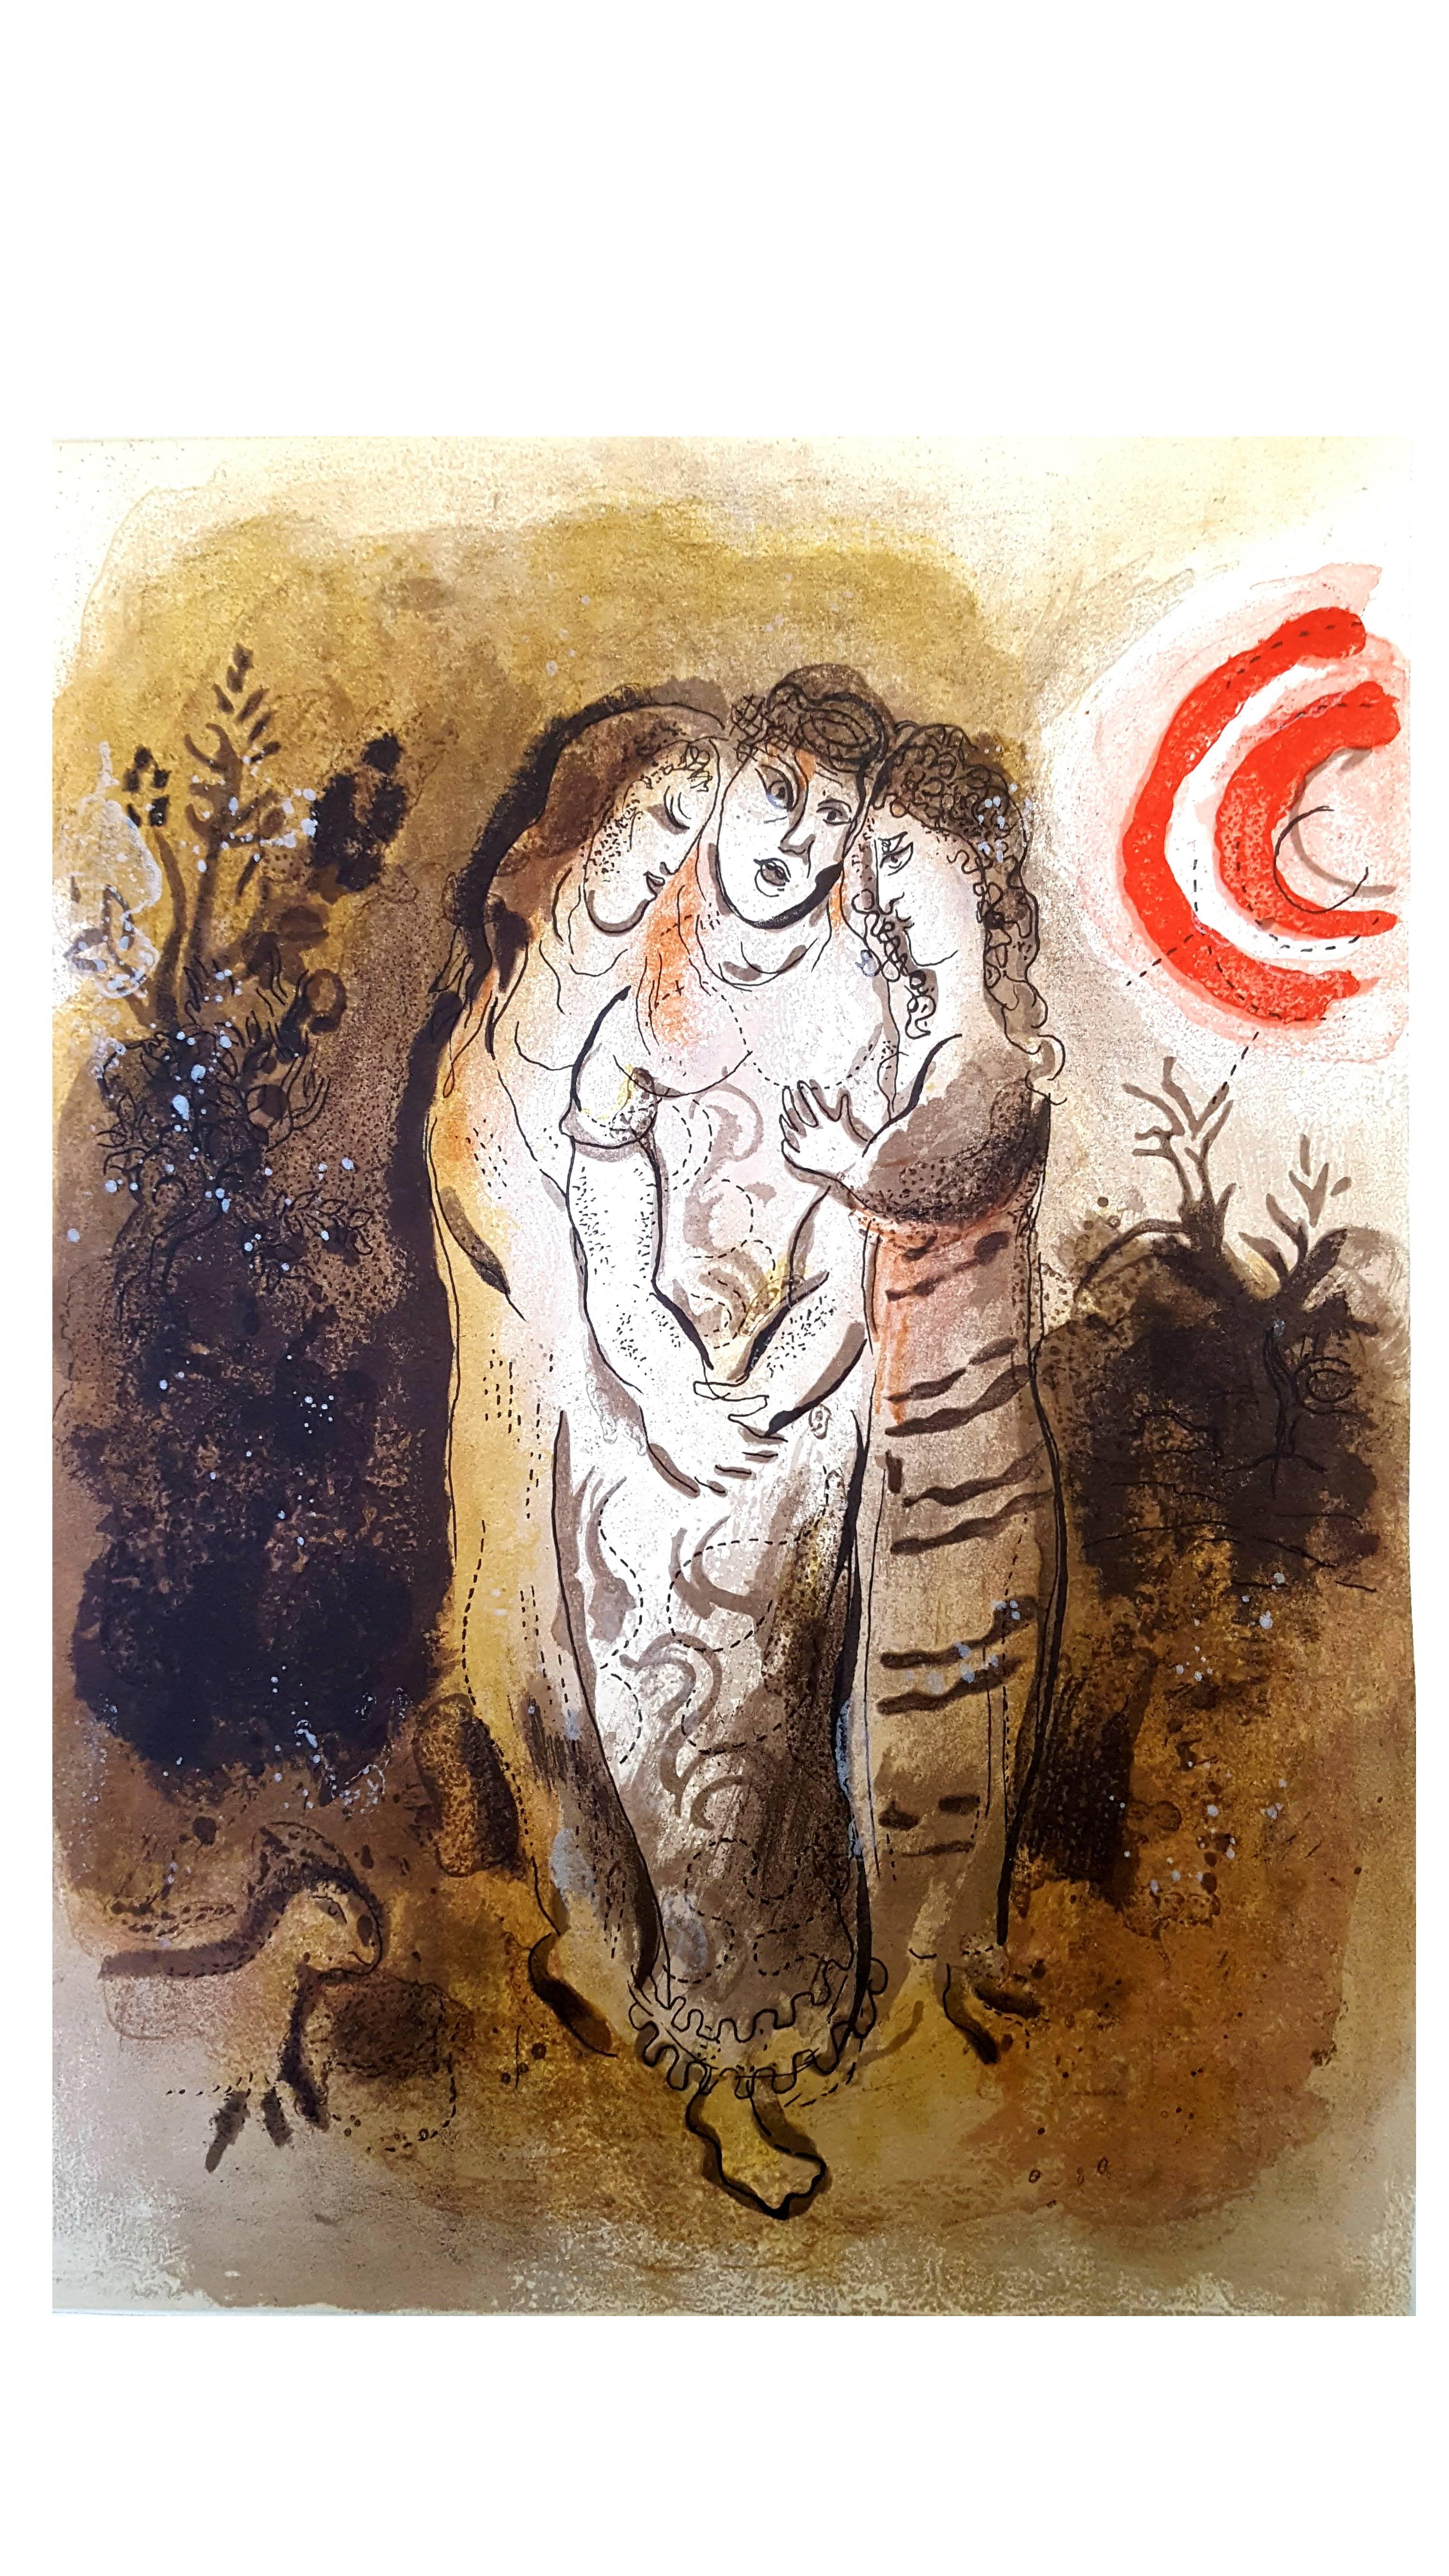 Marc Chagall, Lithograhie originale représentant un instant de la Bible.
Technique :	Lithographie originale en couleurs (Mourlot n° 234)
Au verso : une autre lithographie originale en noir et blanc (Mourlot n° 257)
Année :	1960
Tailles :	35,5 x 26